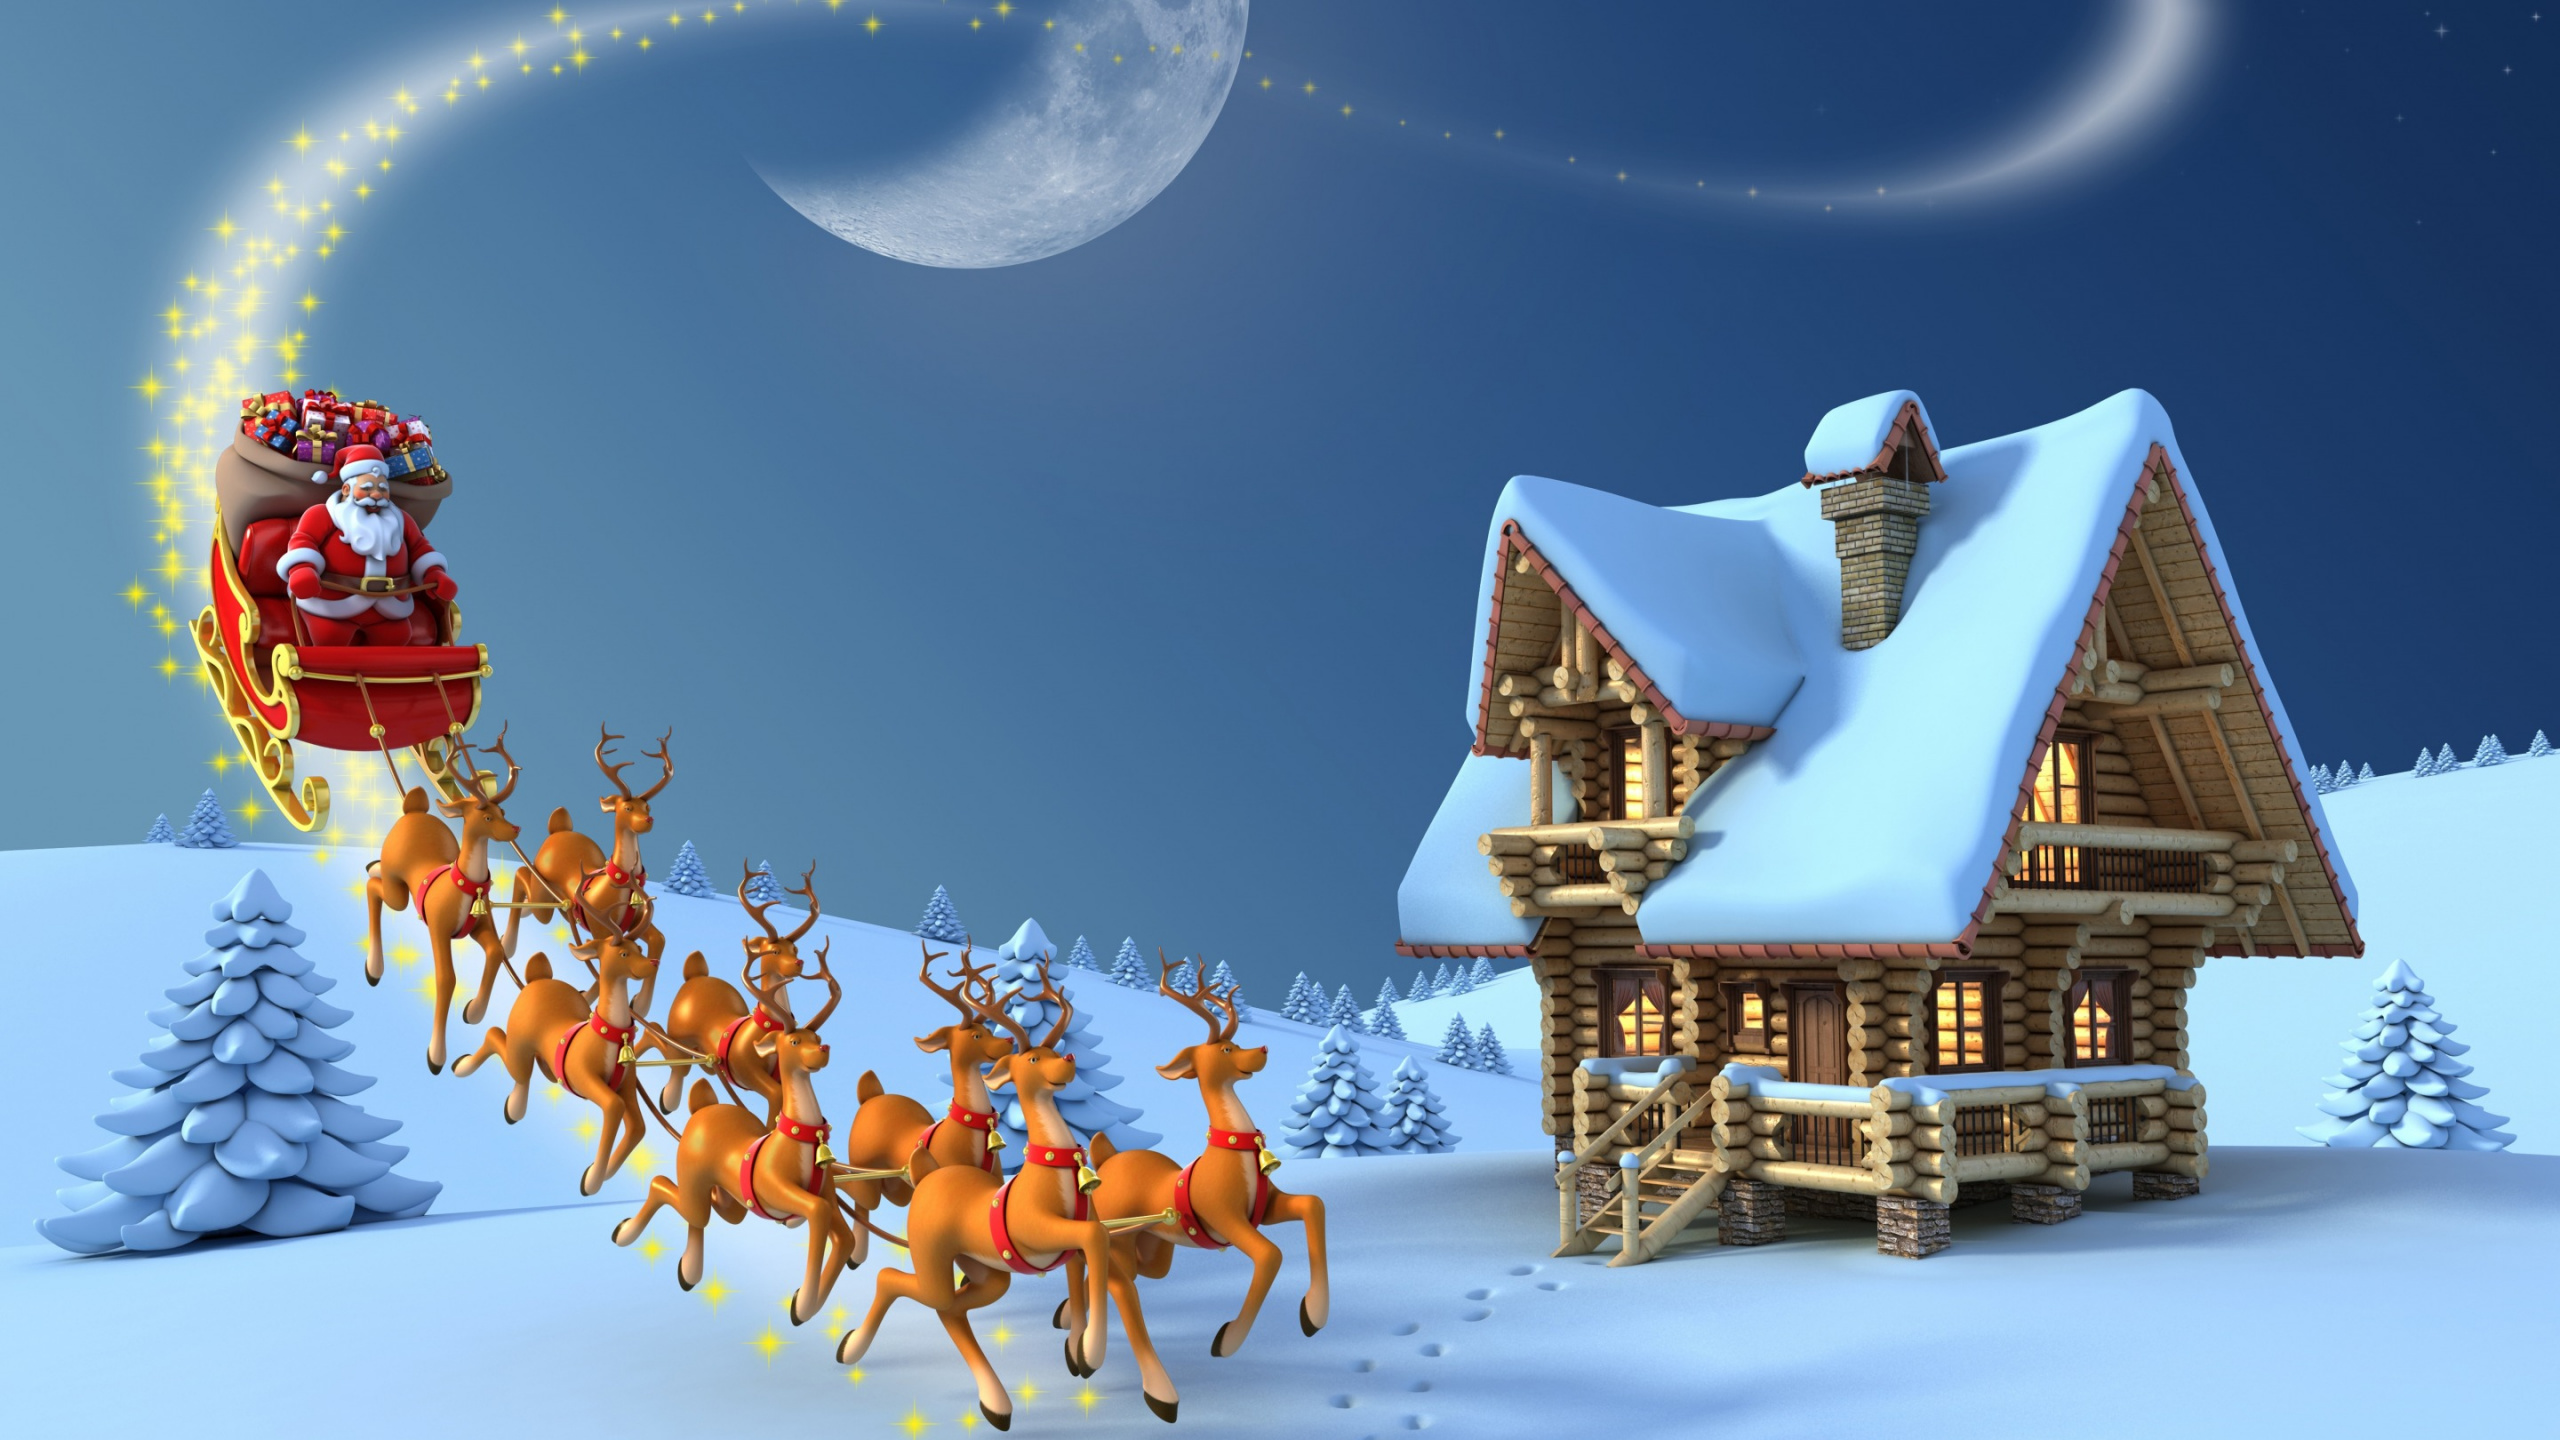 驯鹿, 圣诞老人, 圣诞节那天, 雪橇, 冬天 壁纸 2560x1440 允许